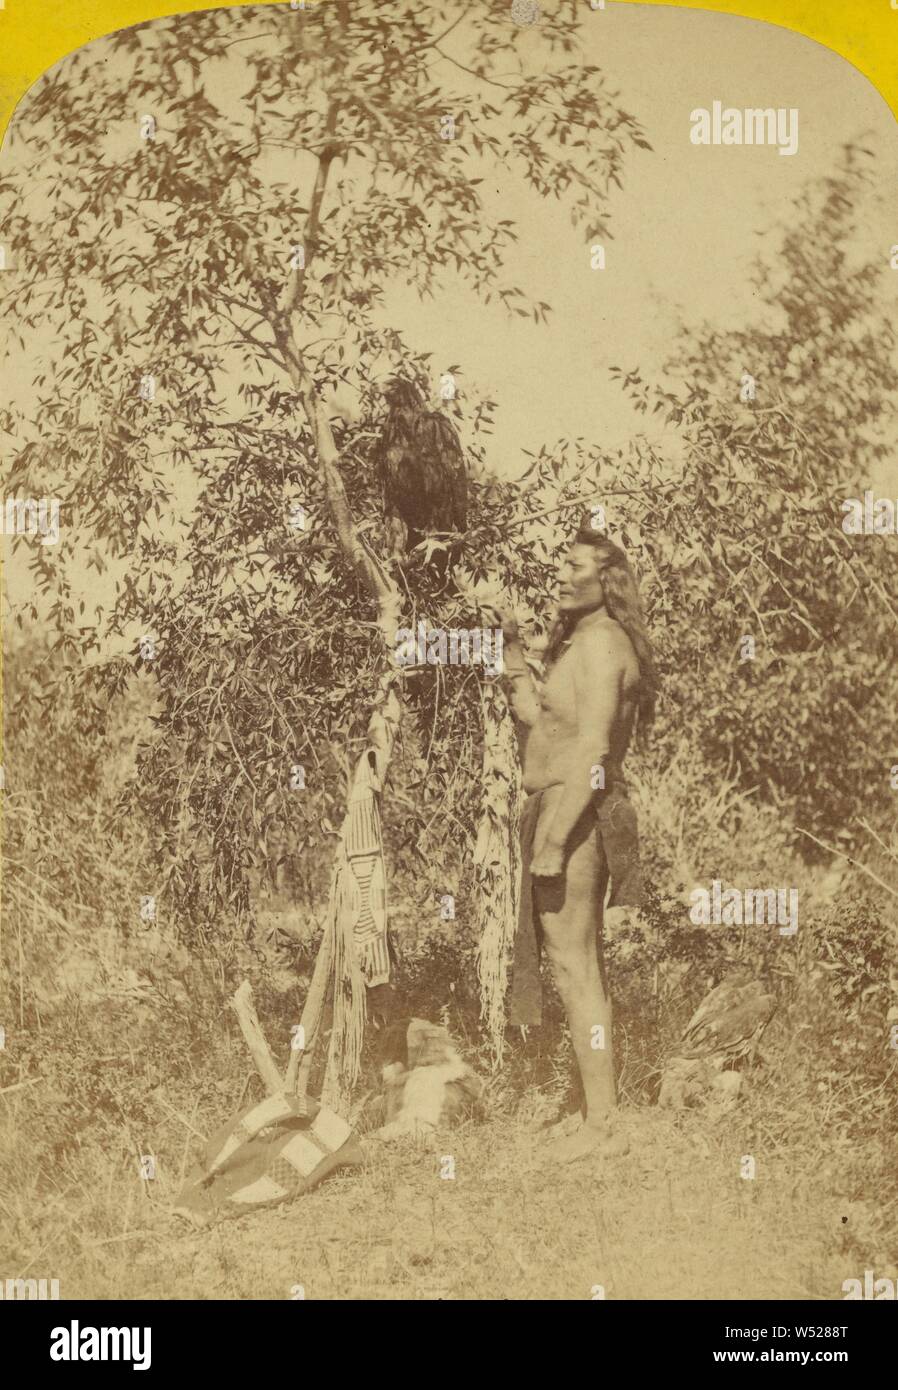 Nau-no-kwits und sein Adler. U-In-Ta Utes. Das Leben in der U-in-ta Tal, am Westhang der Wasatch Berge in Utah., John K. Hillers (American, 1843 - 1925), ca. 1874, Eiweiß silber Drucken Stockfoto